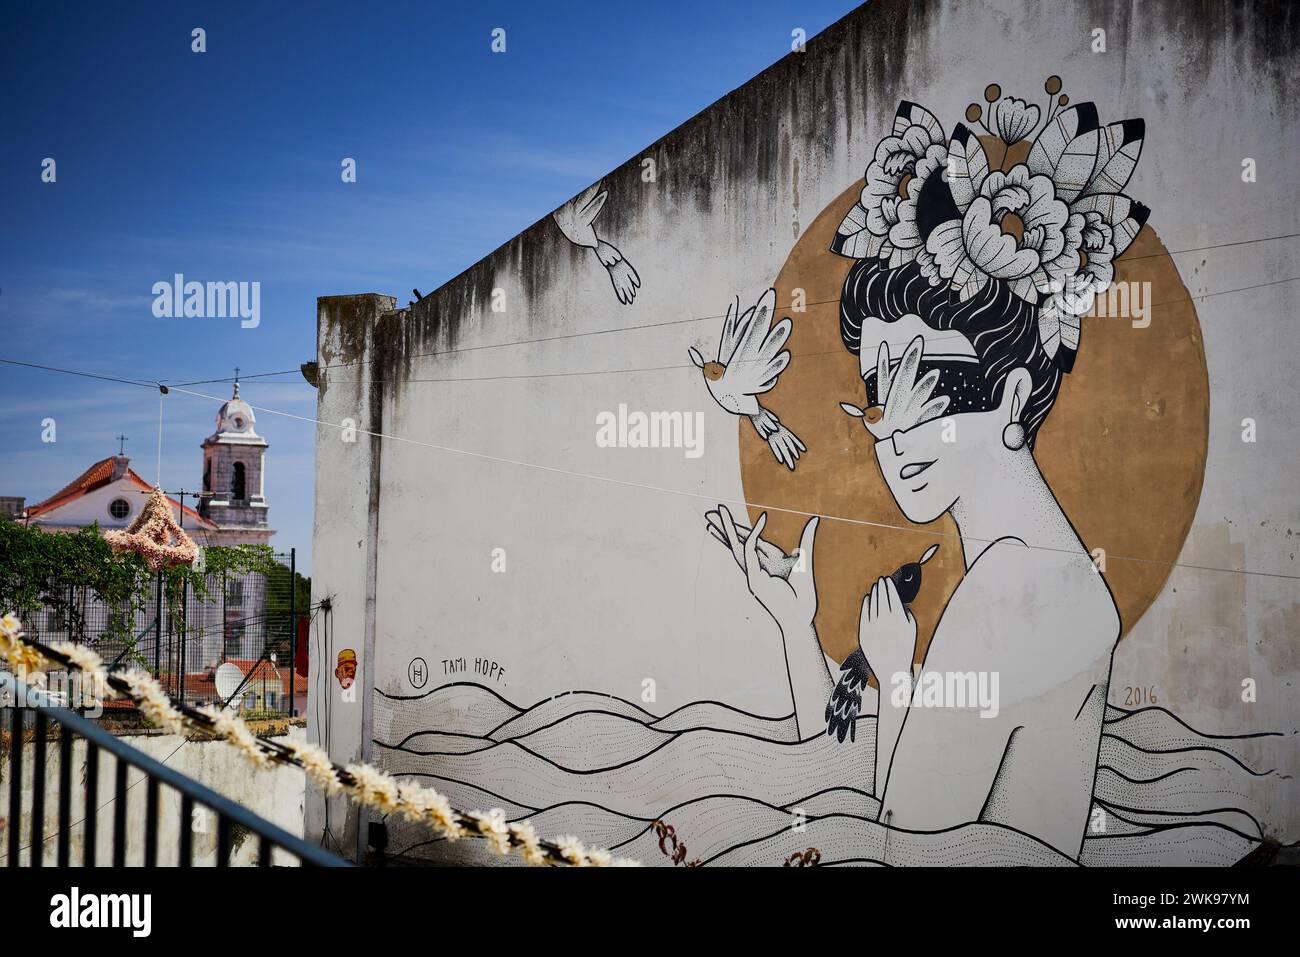 Wall Art Mural, Lisboa, Portugal Stock Photo